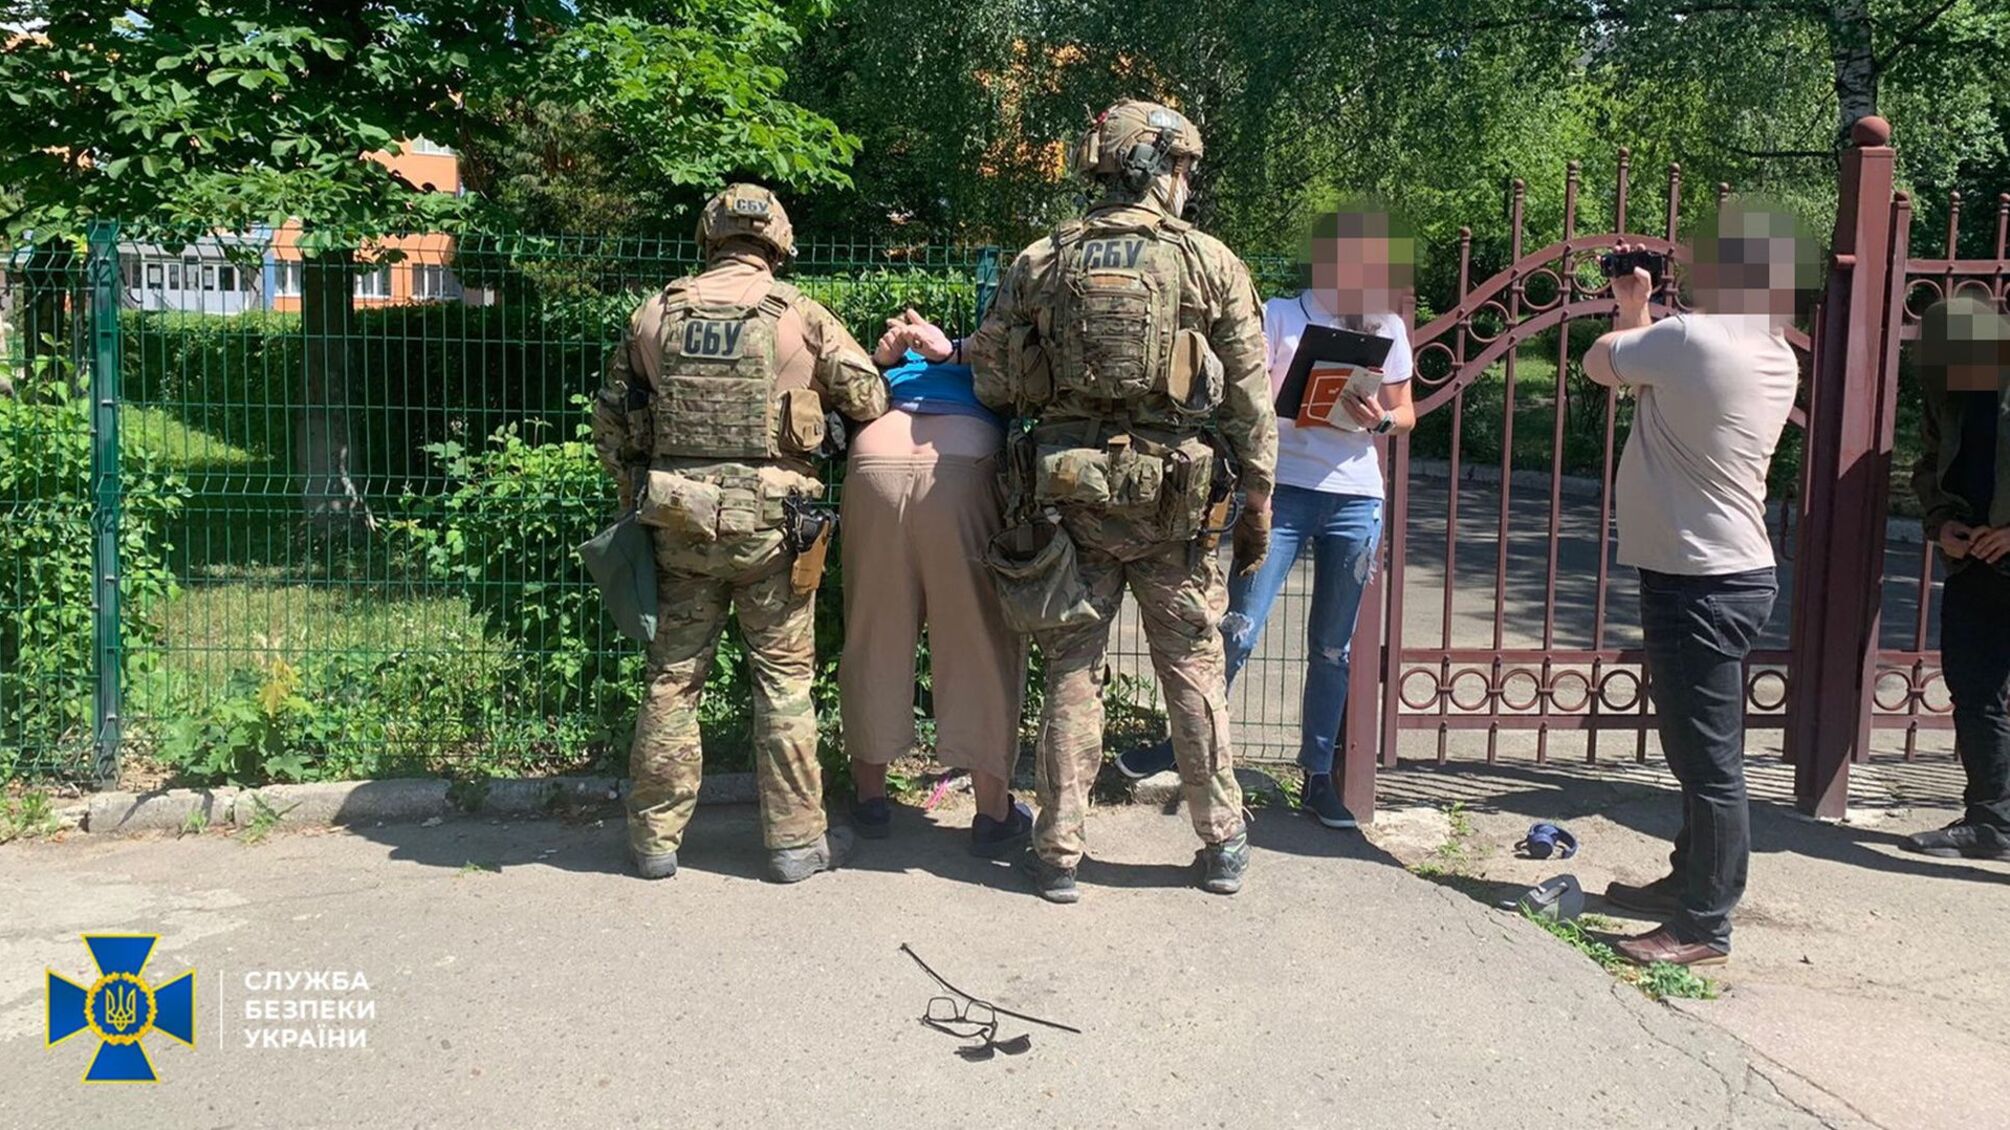 Задержан российский диверсант, который должен готовить взрывы на железной дороге в Черновцах - СБУ